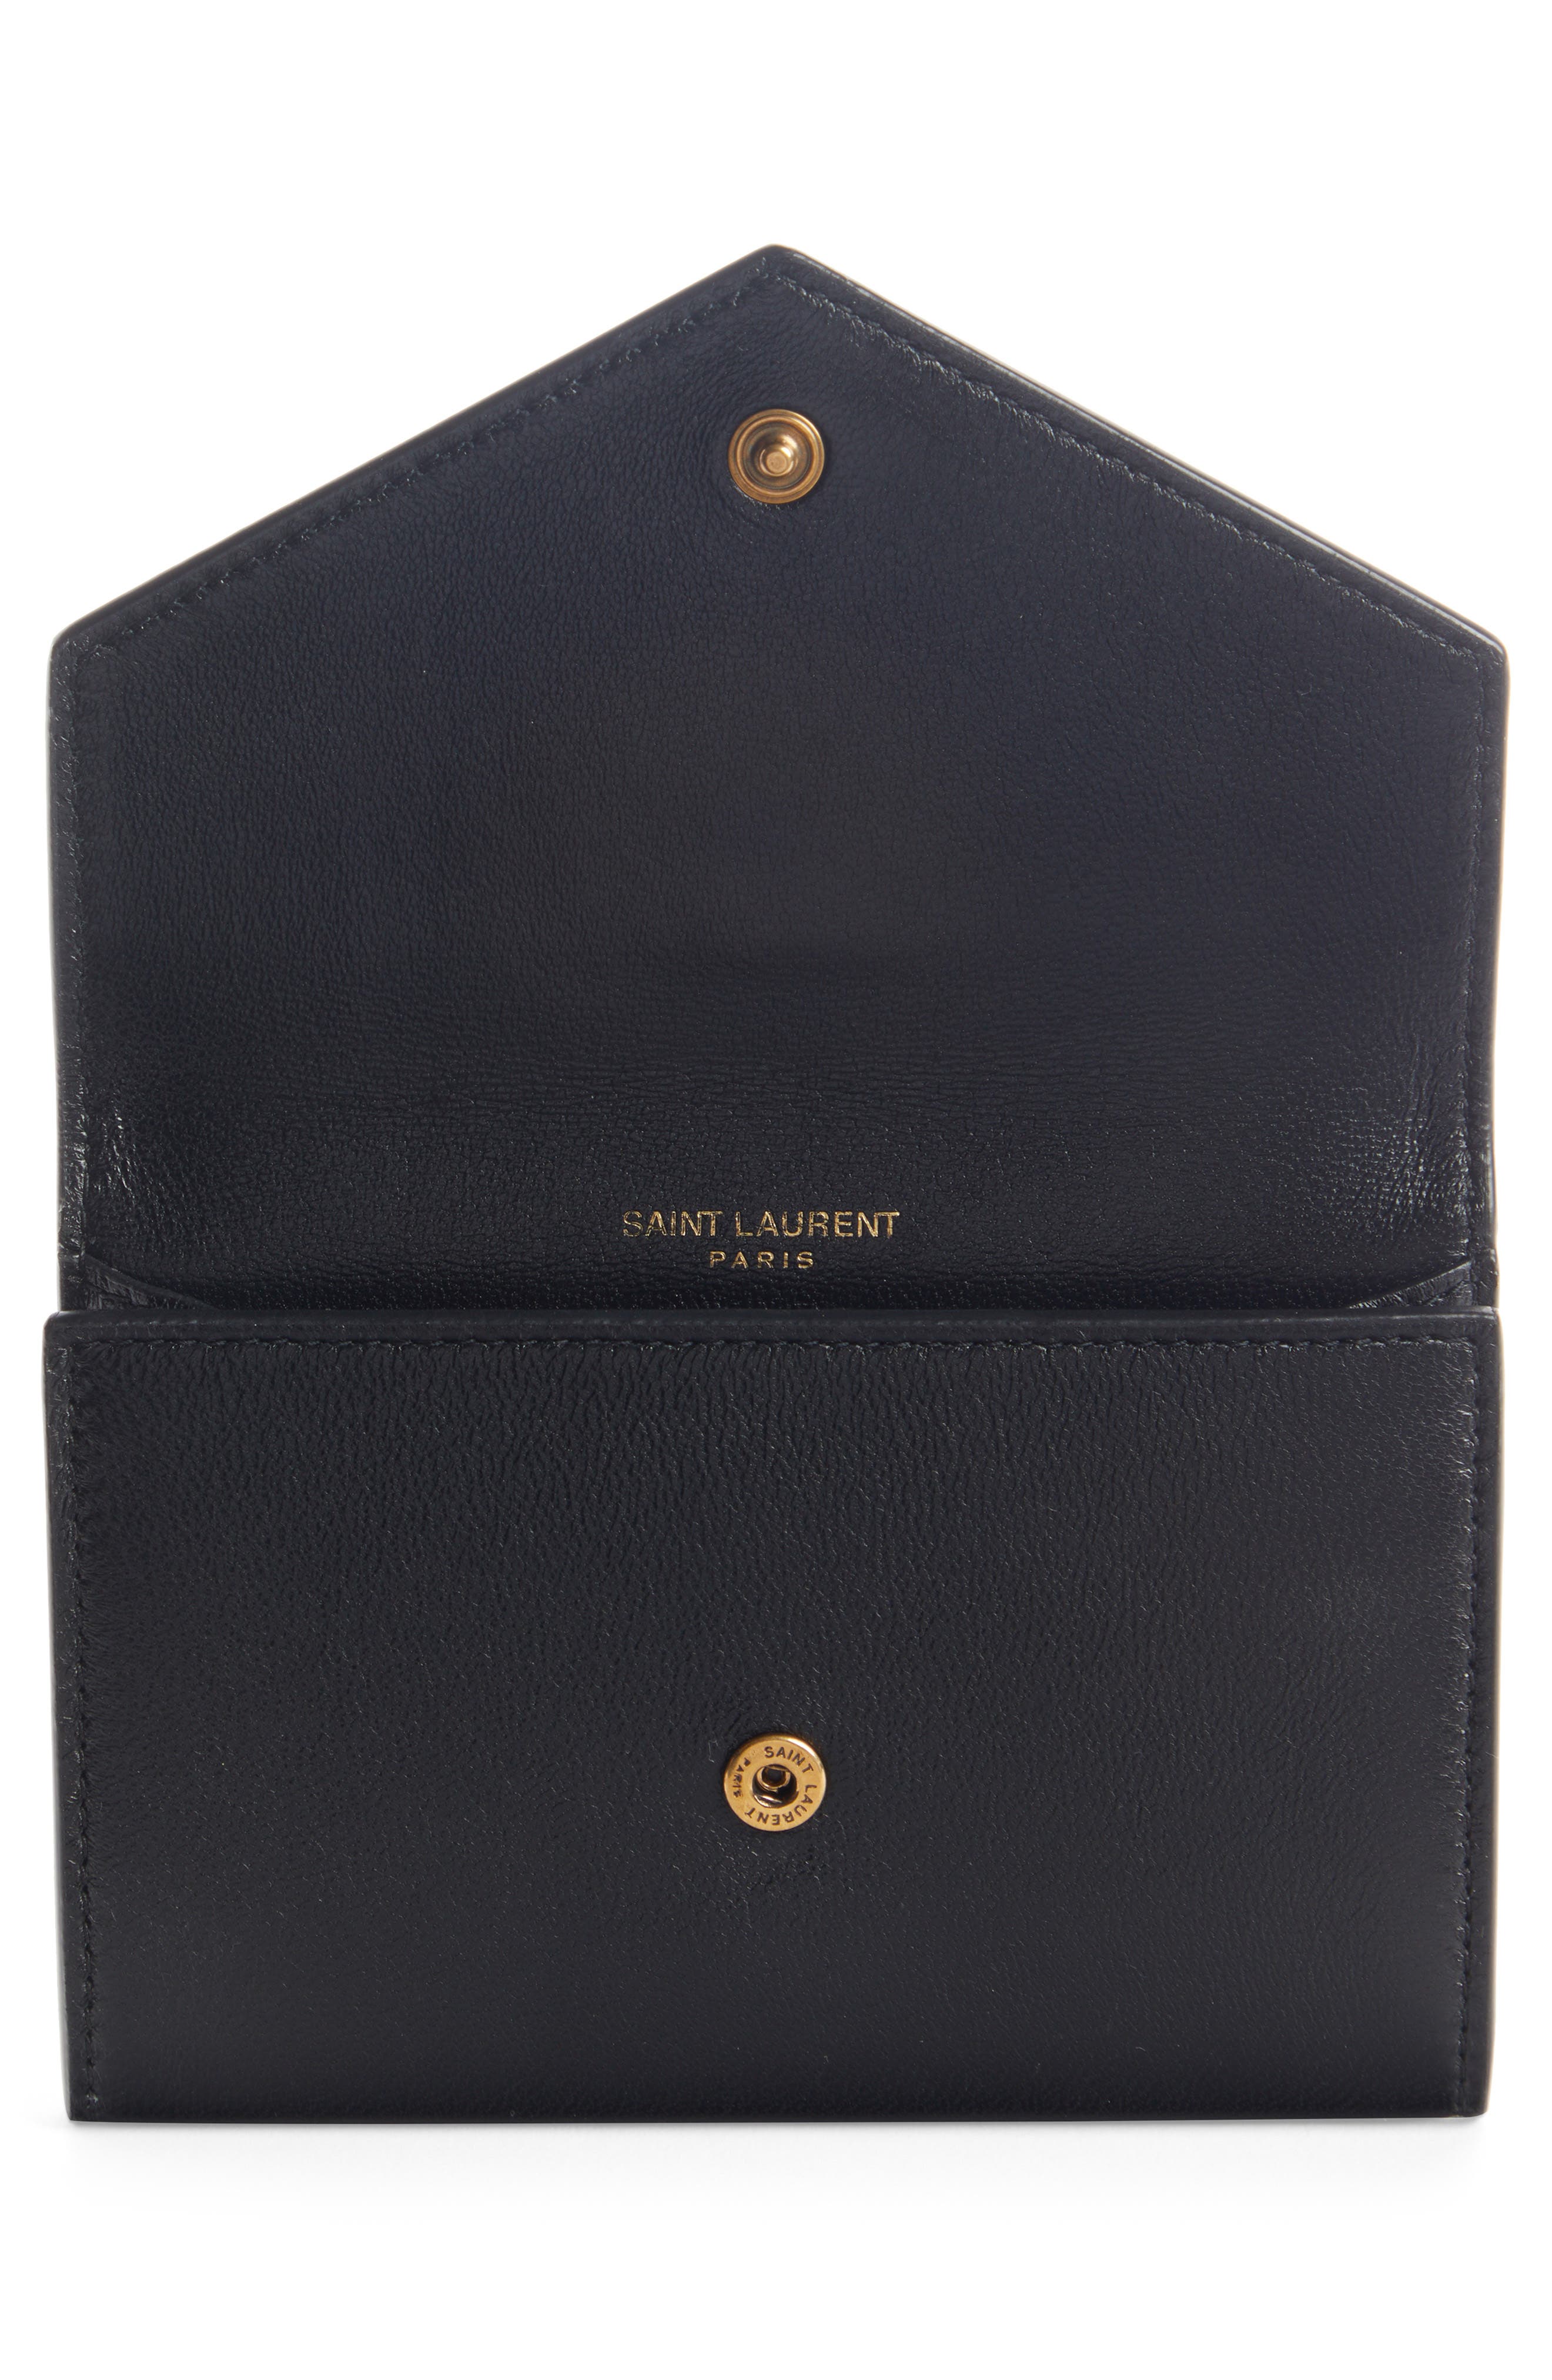 Saint Laurent Monogram Leather Card Case Nero/ Trigalva